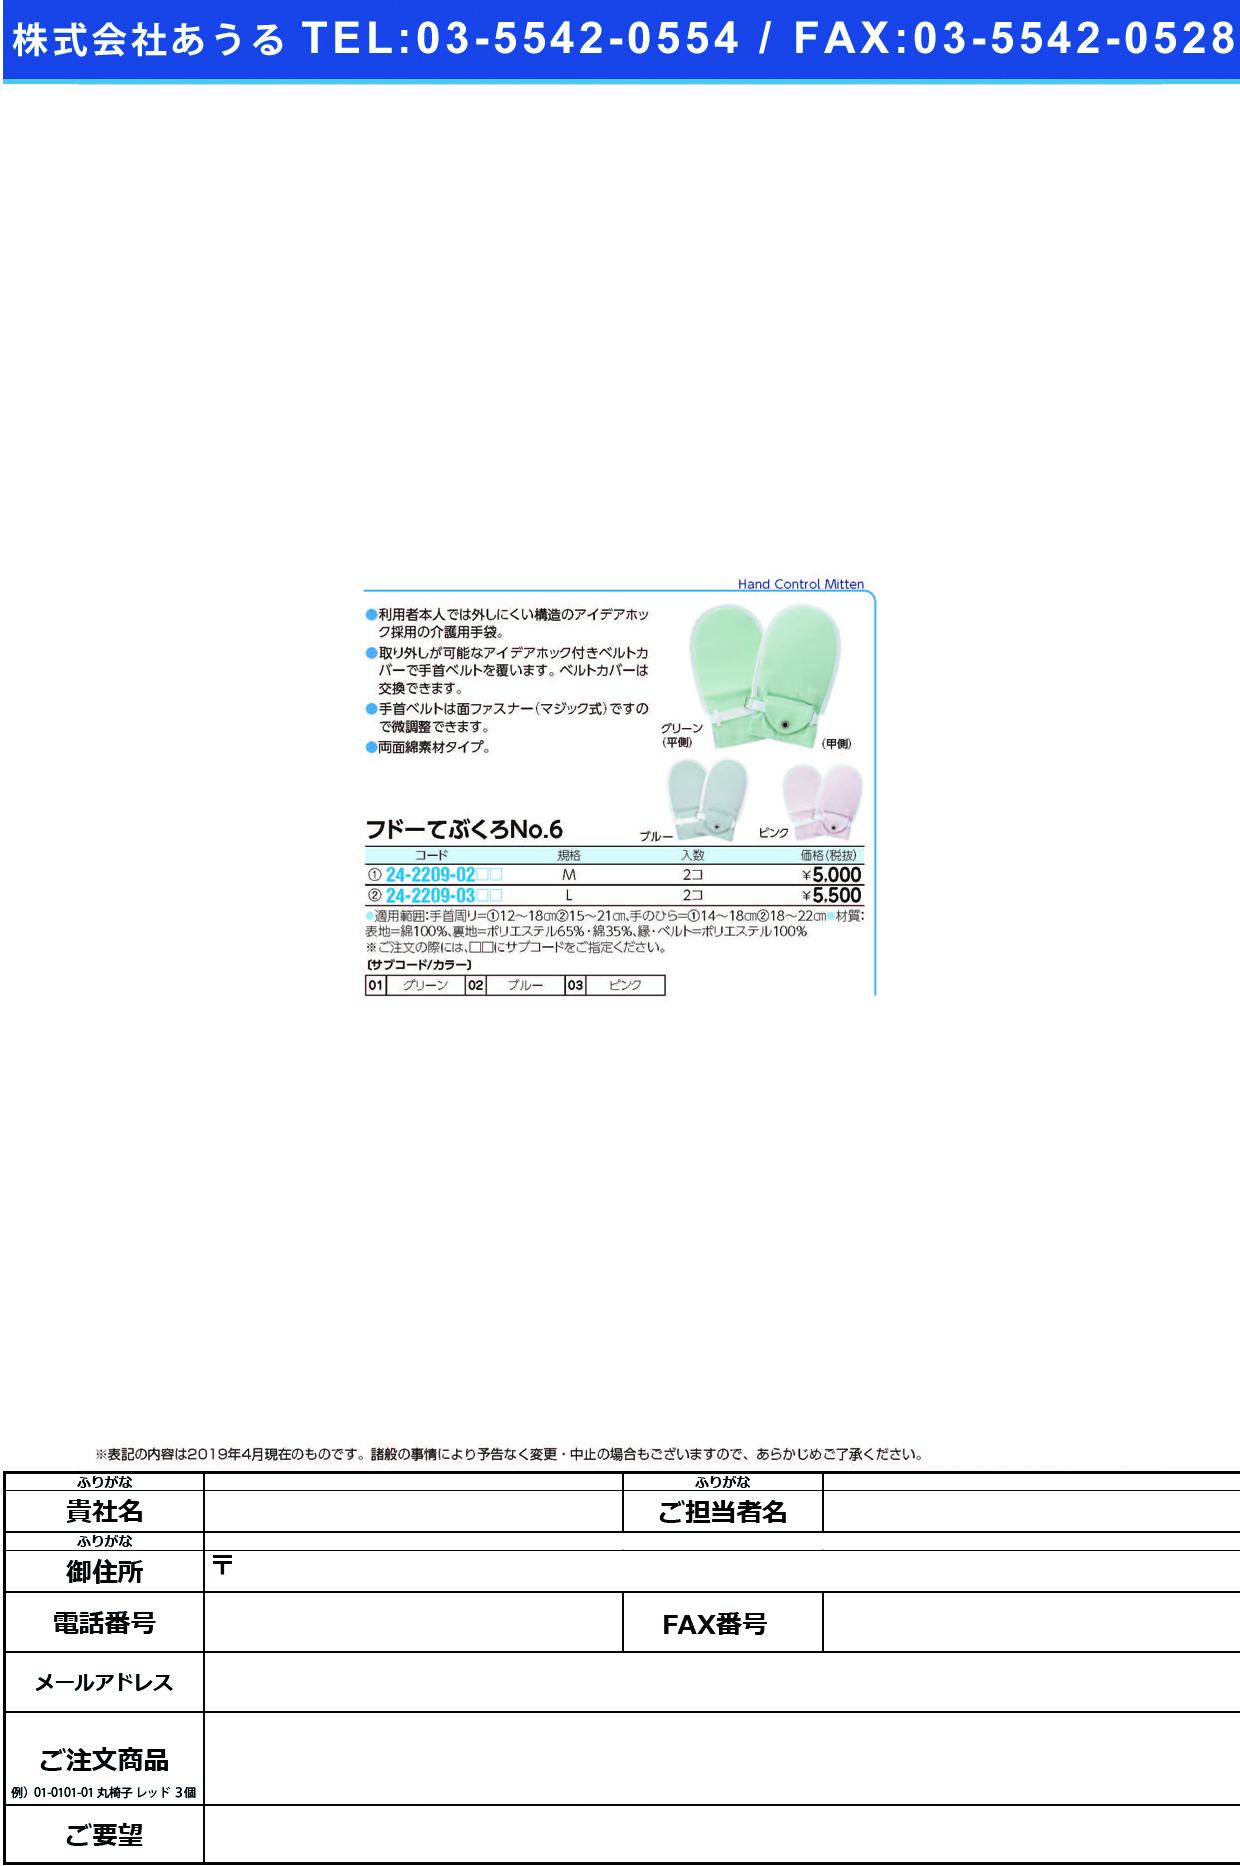 (24-2209-02)フドーてぶくろＮｏ．６ M(2ﾏｲｲﾘ) ﾌﾄﾞｰﾃﾌﾞｸﾛNO6 ブルー【1双単位】【2019年カタログ商品】